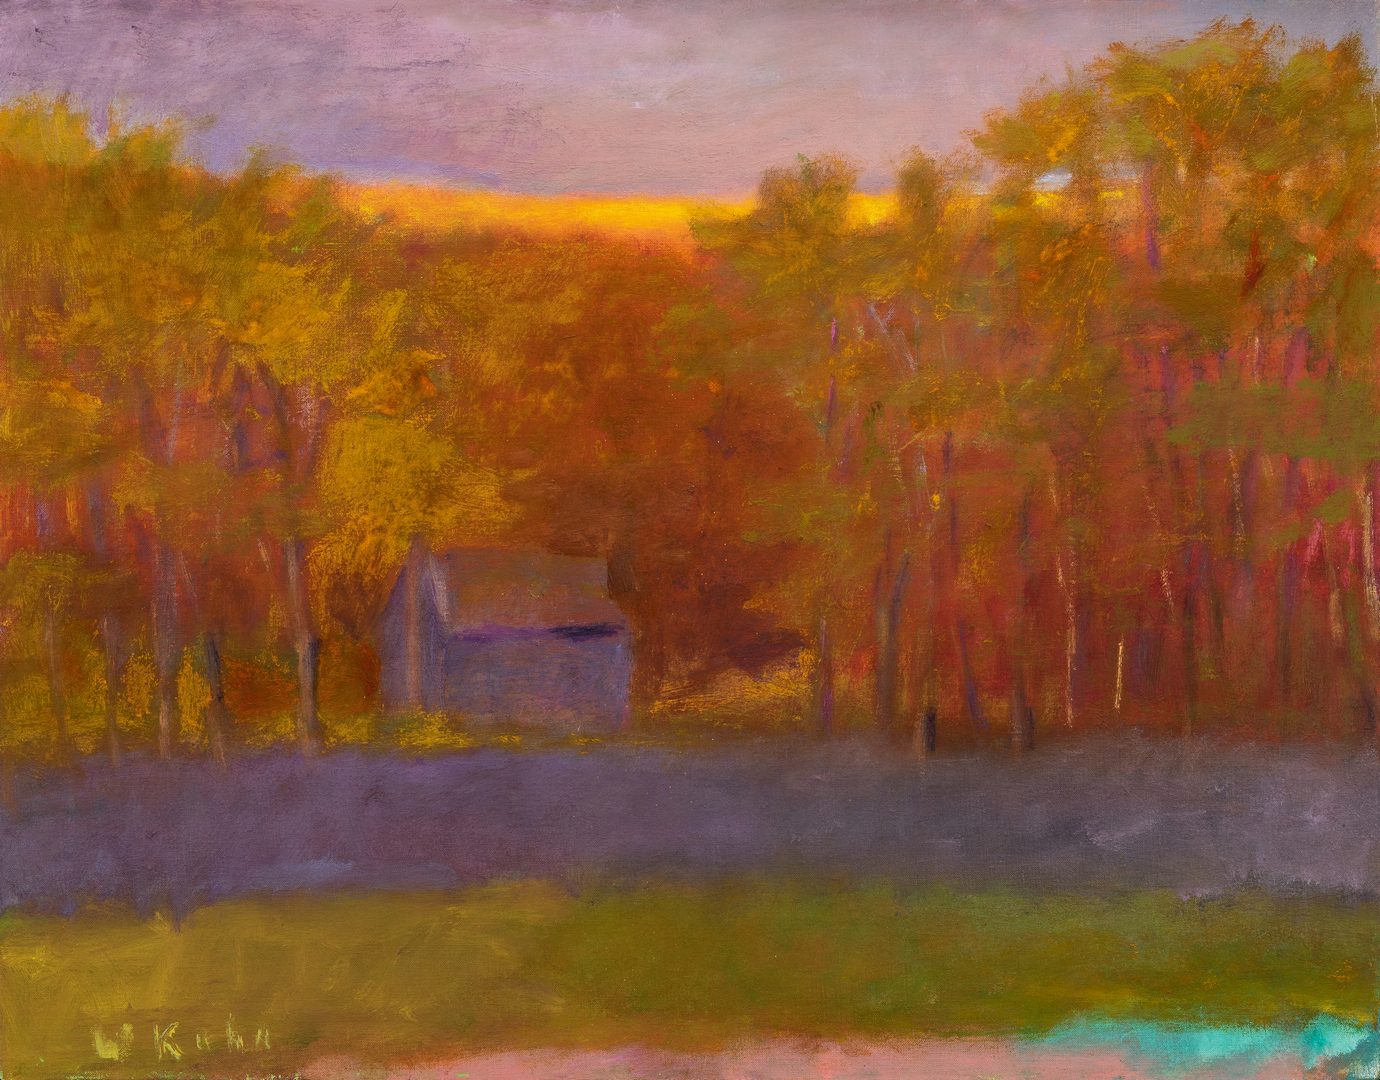 Lot 523: Wolf Kahn Oil on Canvas Landscape, Glow on the Ridge